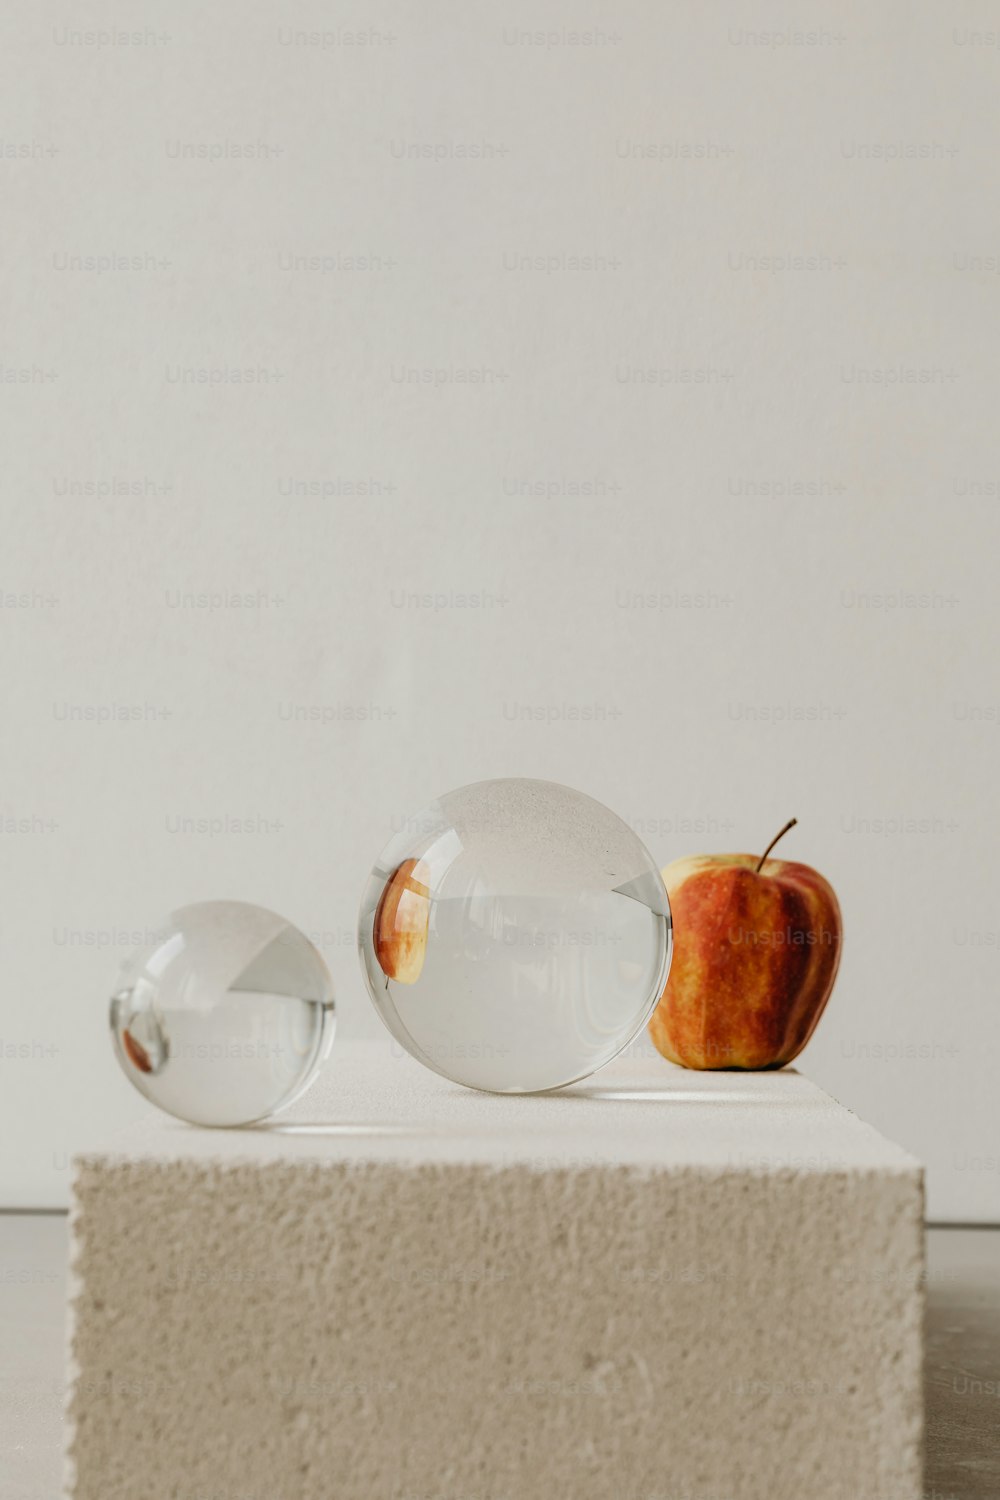 ein Apfel und zwei Glaskugeln auf weißer Fläche